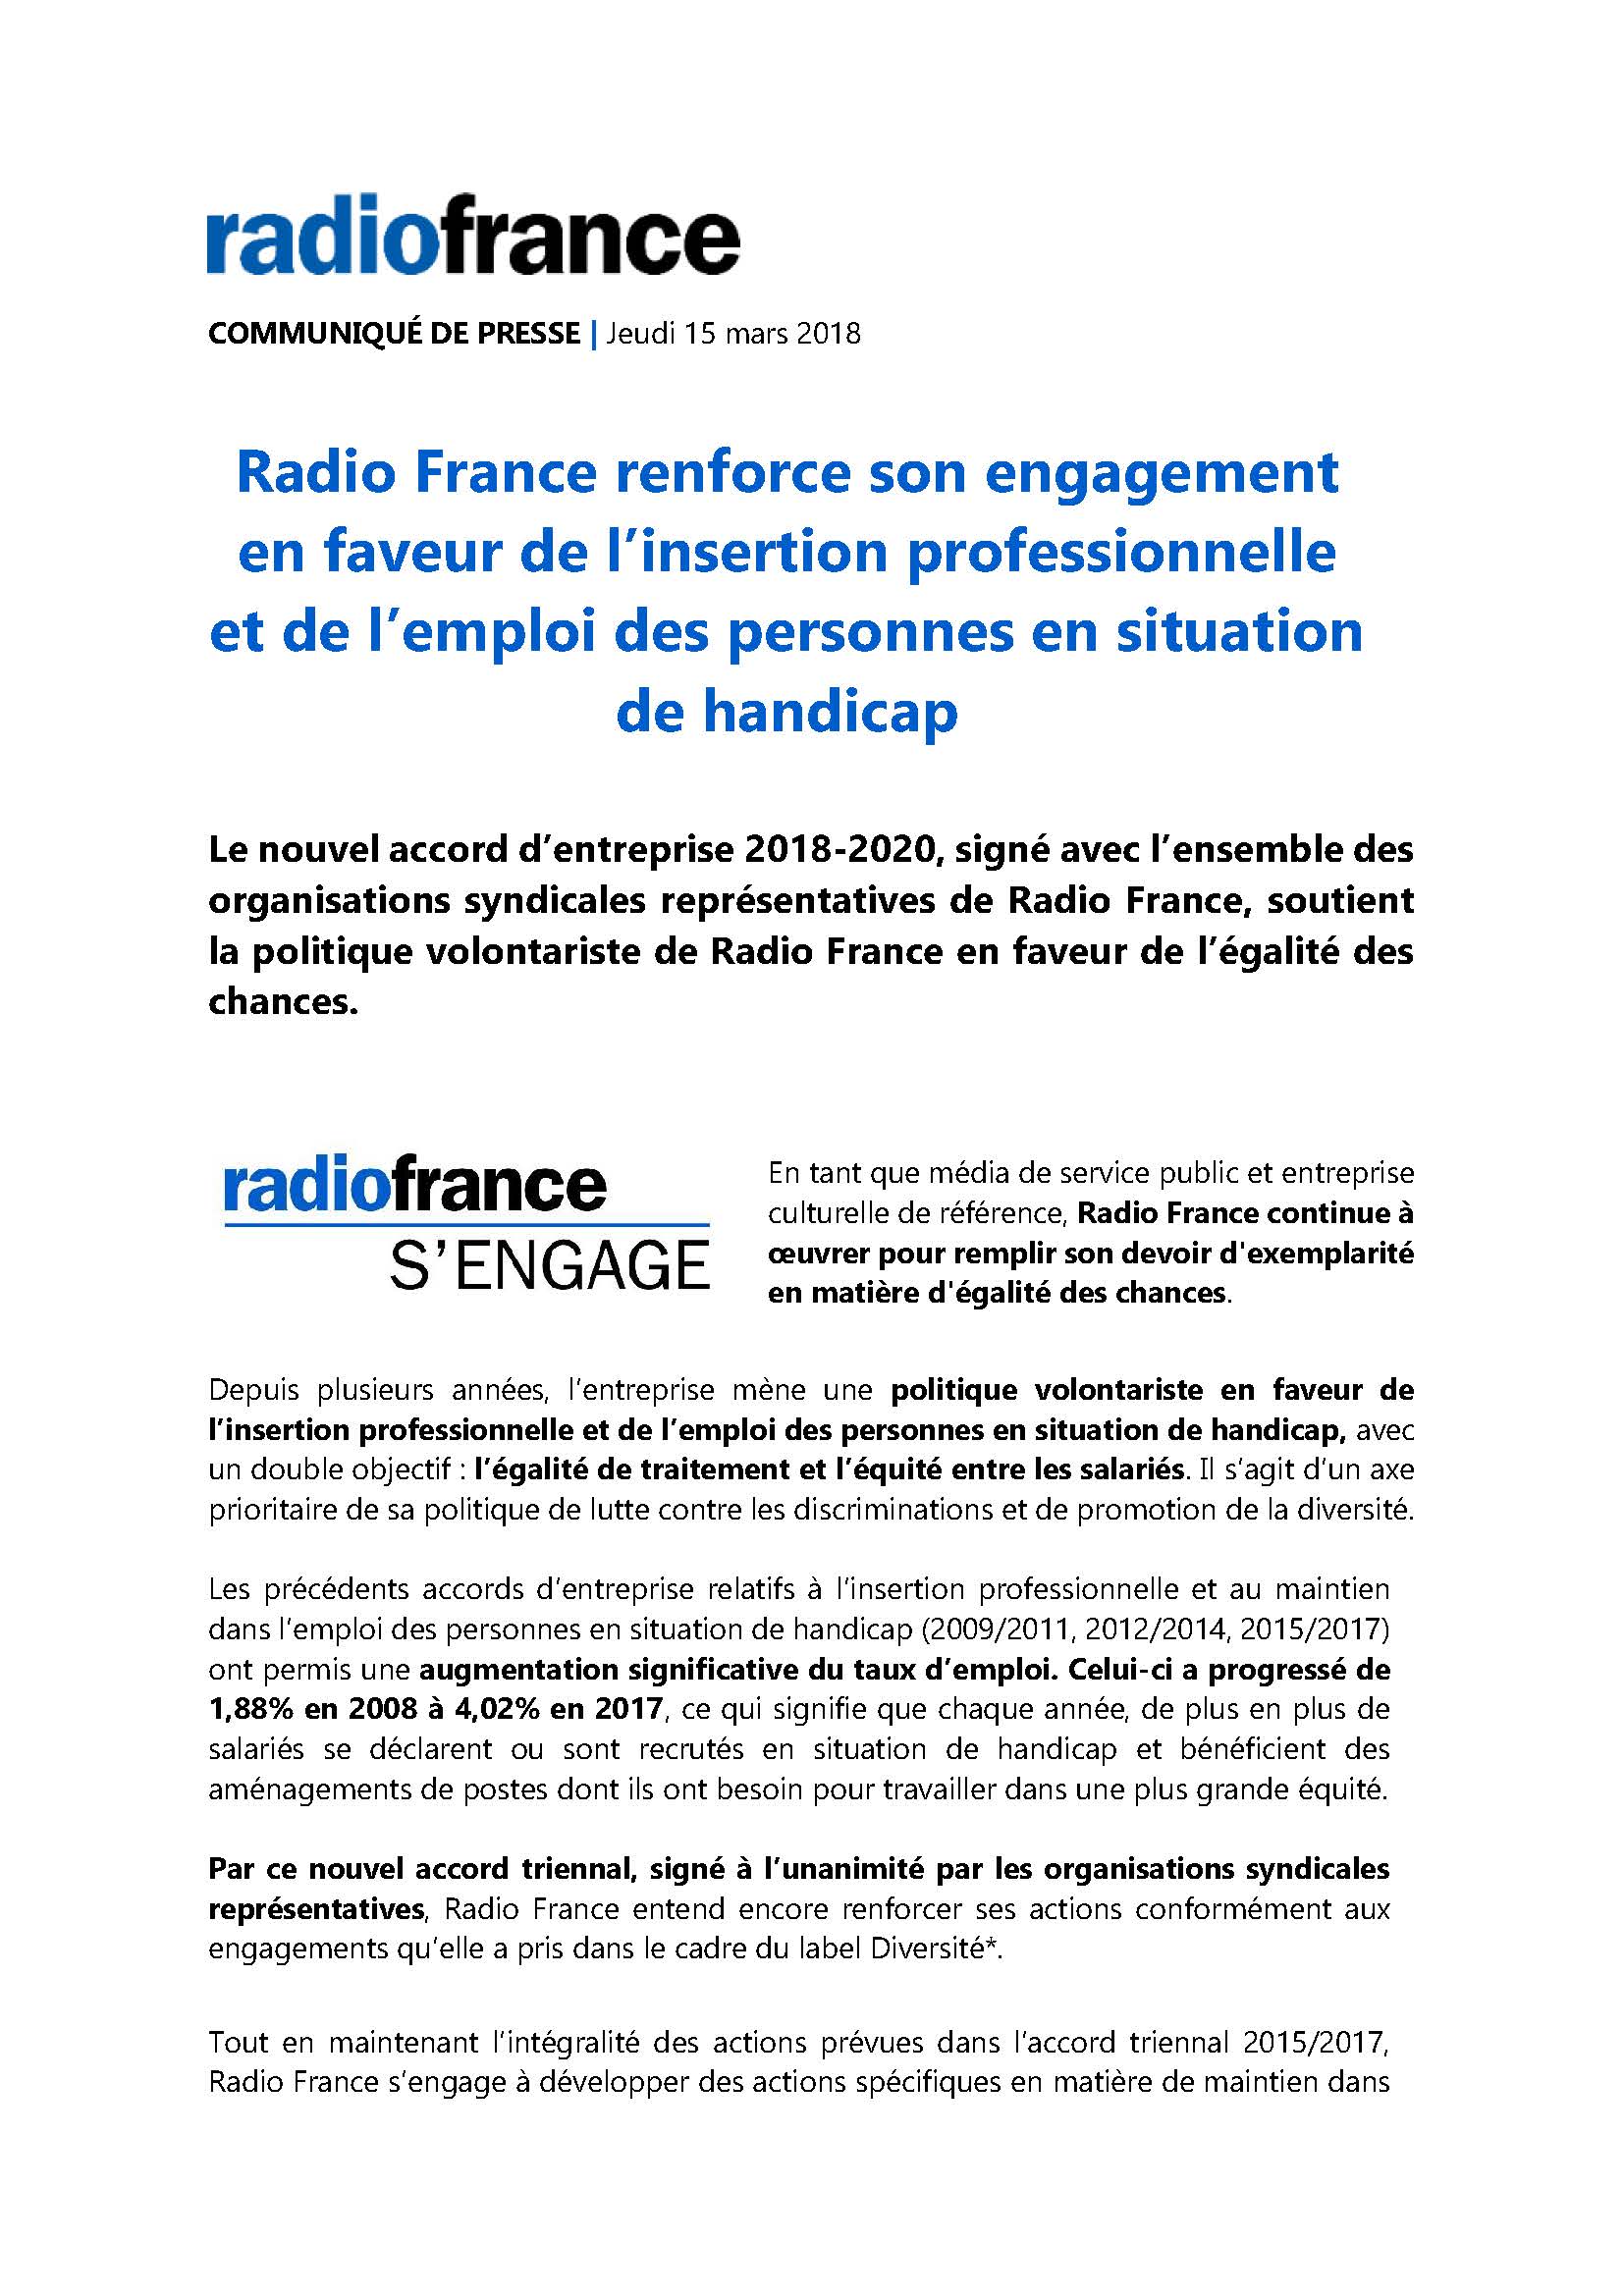 radio-france-renfoce-son-engagement-en-faveur-de-lemploi-des-personnes-en-situation-de-handicap_page_1